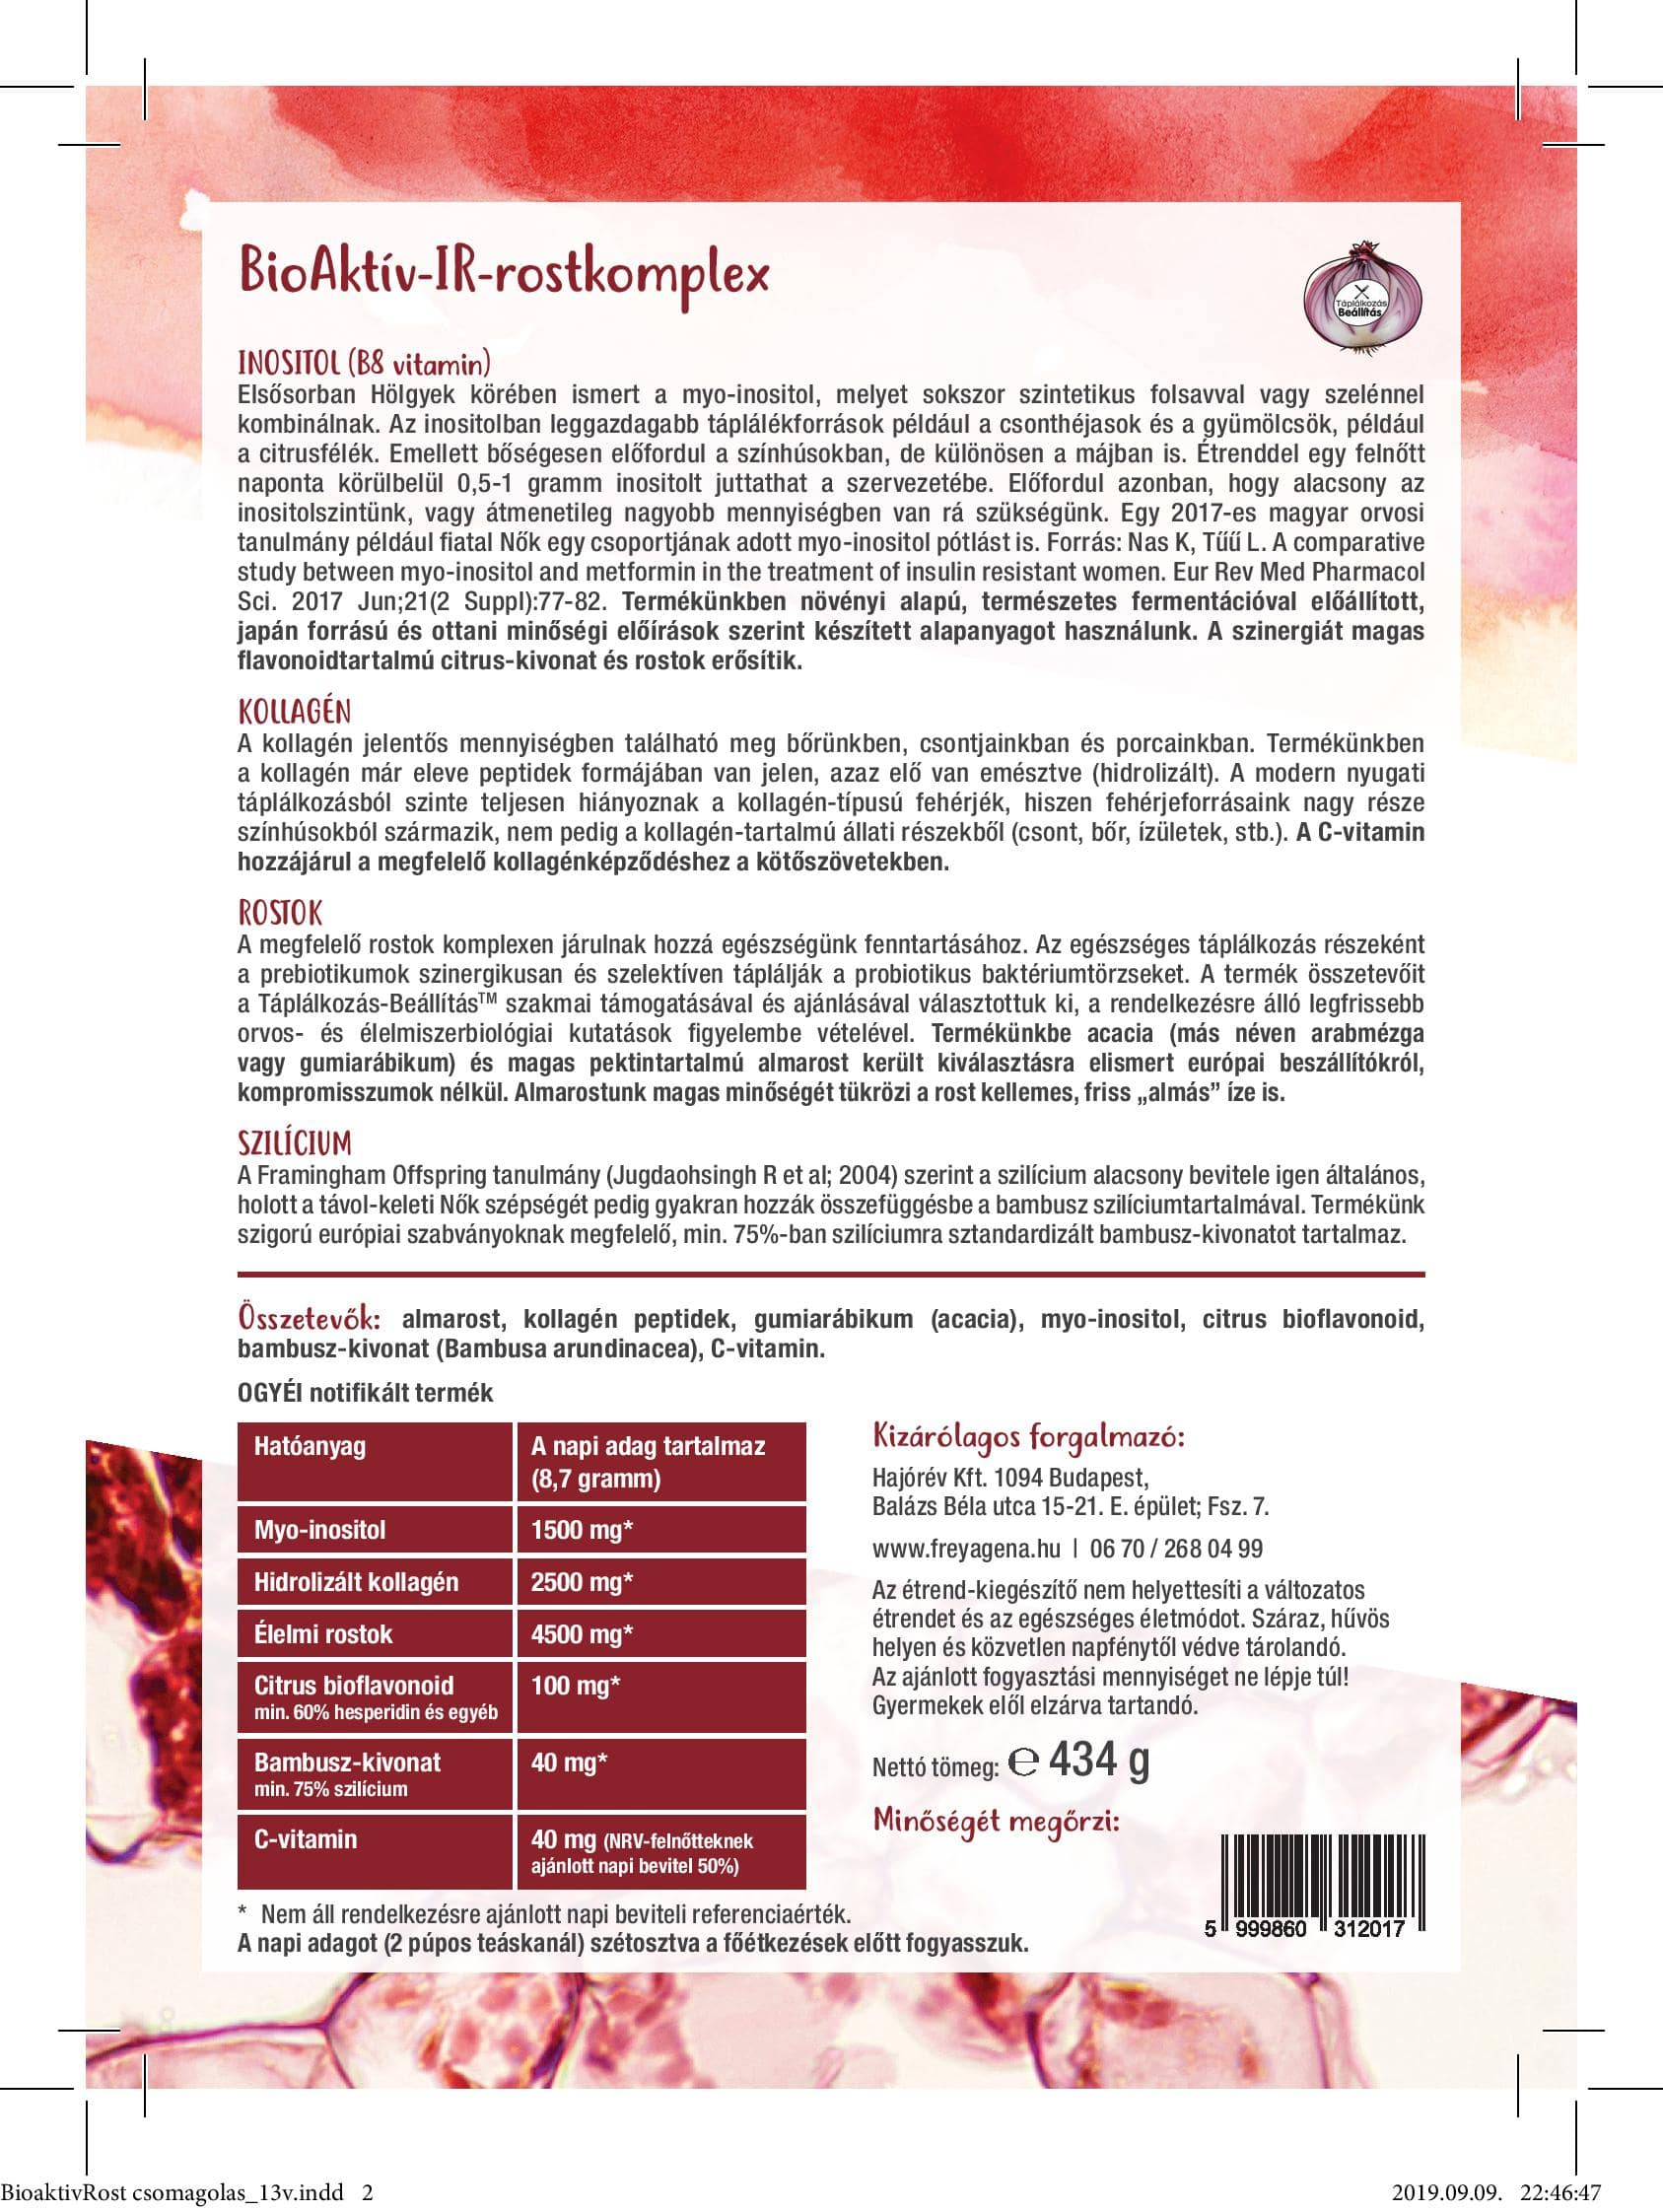 Freyagena BioAktív-IR-rostkomplex - Összetevők, tápértékek